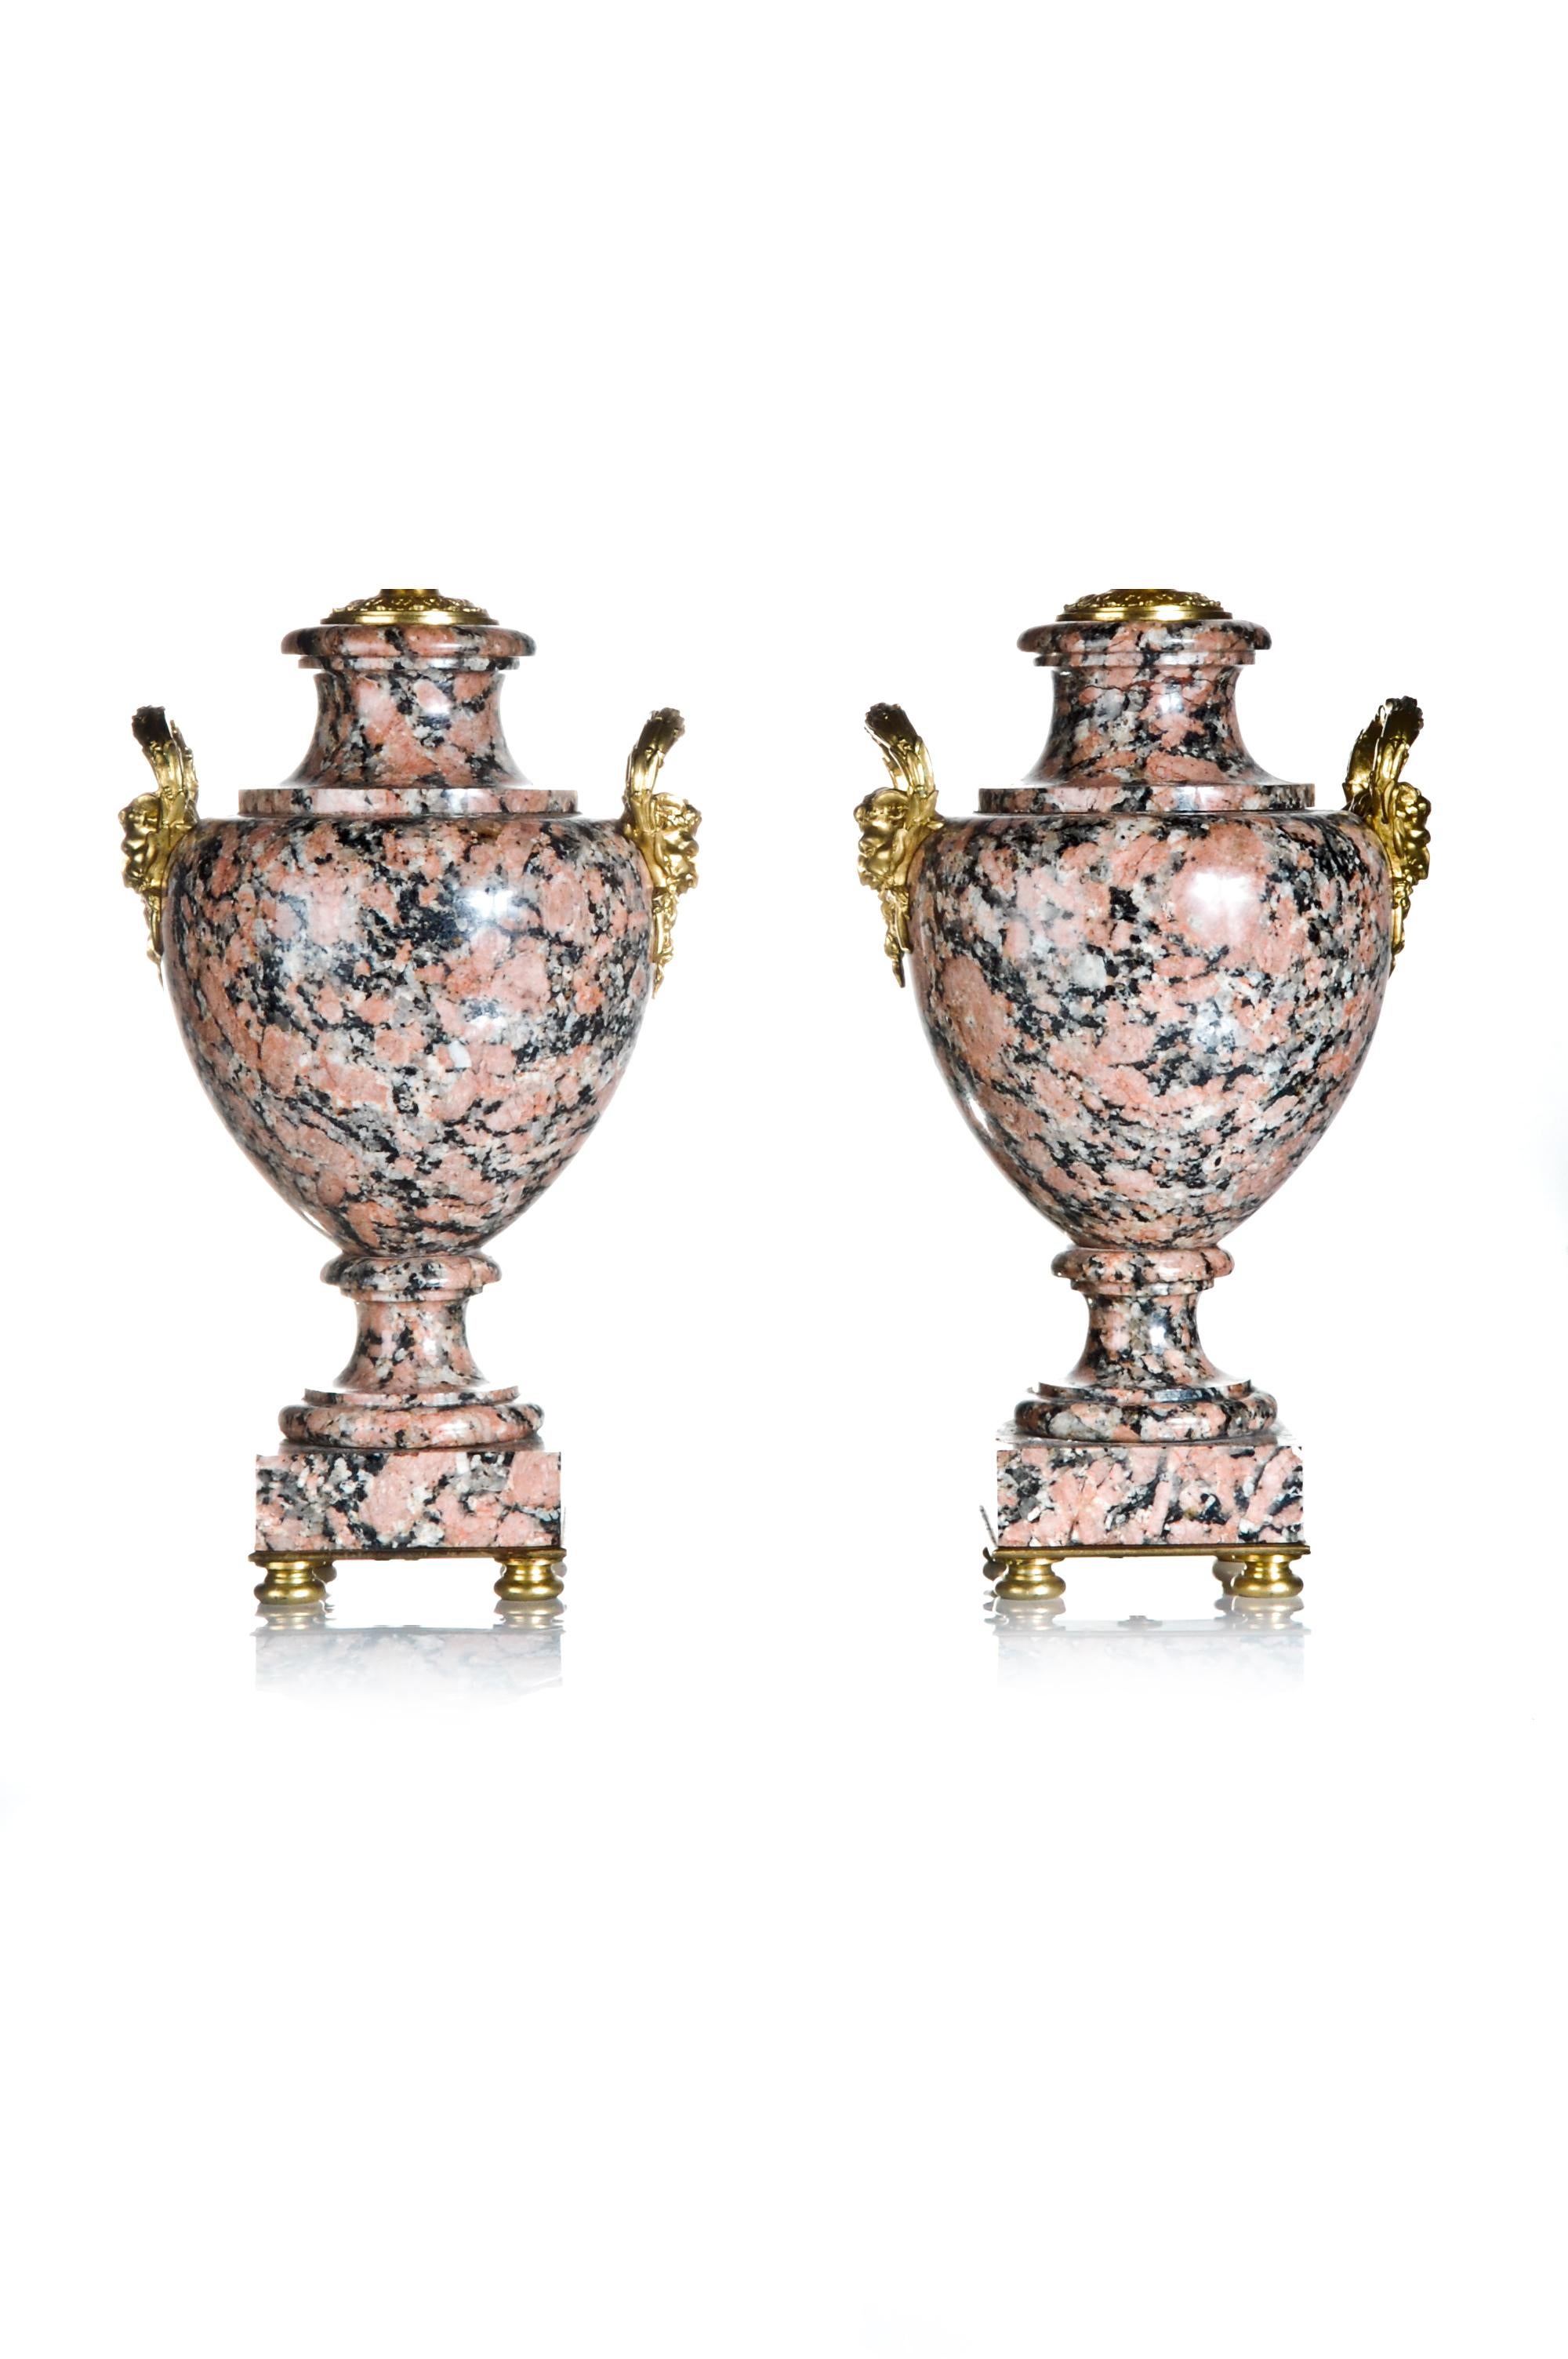 Ein Paar einzigartiger französischer Lampen im Louis-XVI-Stil in Form einer Urne aus vergoldeter Bronze, die auf quadratischen Sockeln mit vergoldeten Bronzemasken an den Seiten angebracht sind.